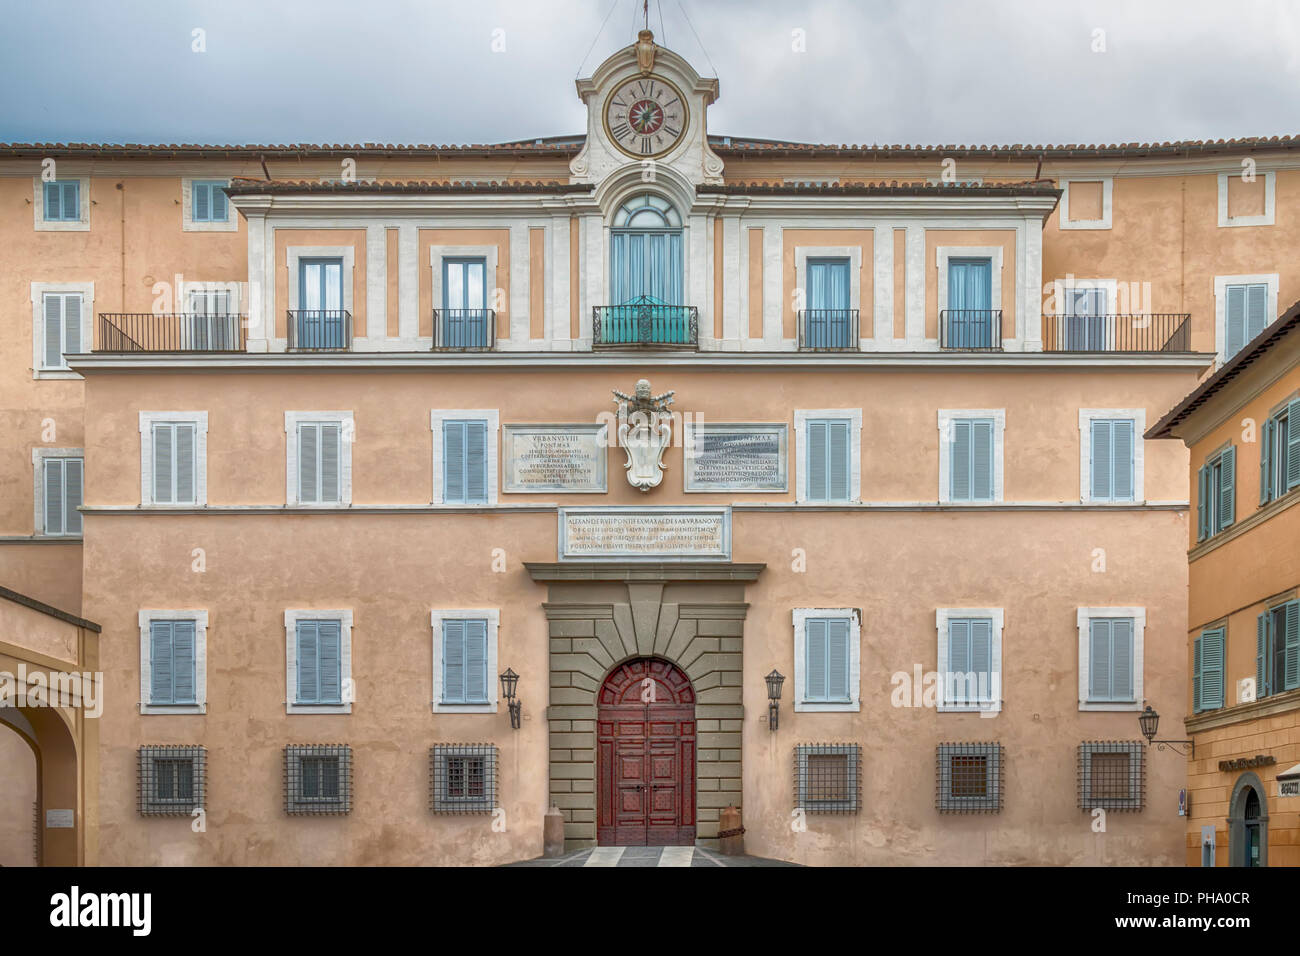 Apostolic Palace of Castel Gandolfo, the summer residence of the Popes Stock Photo